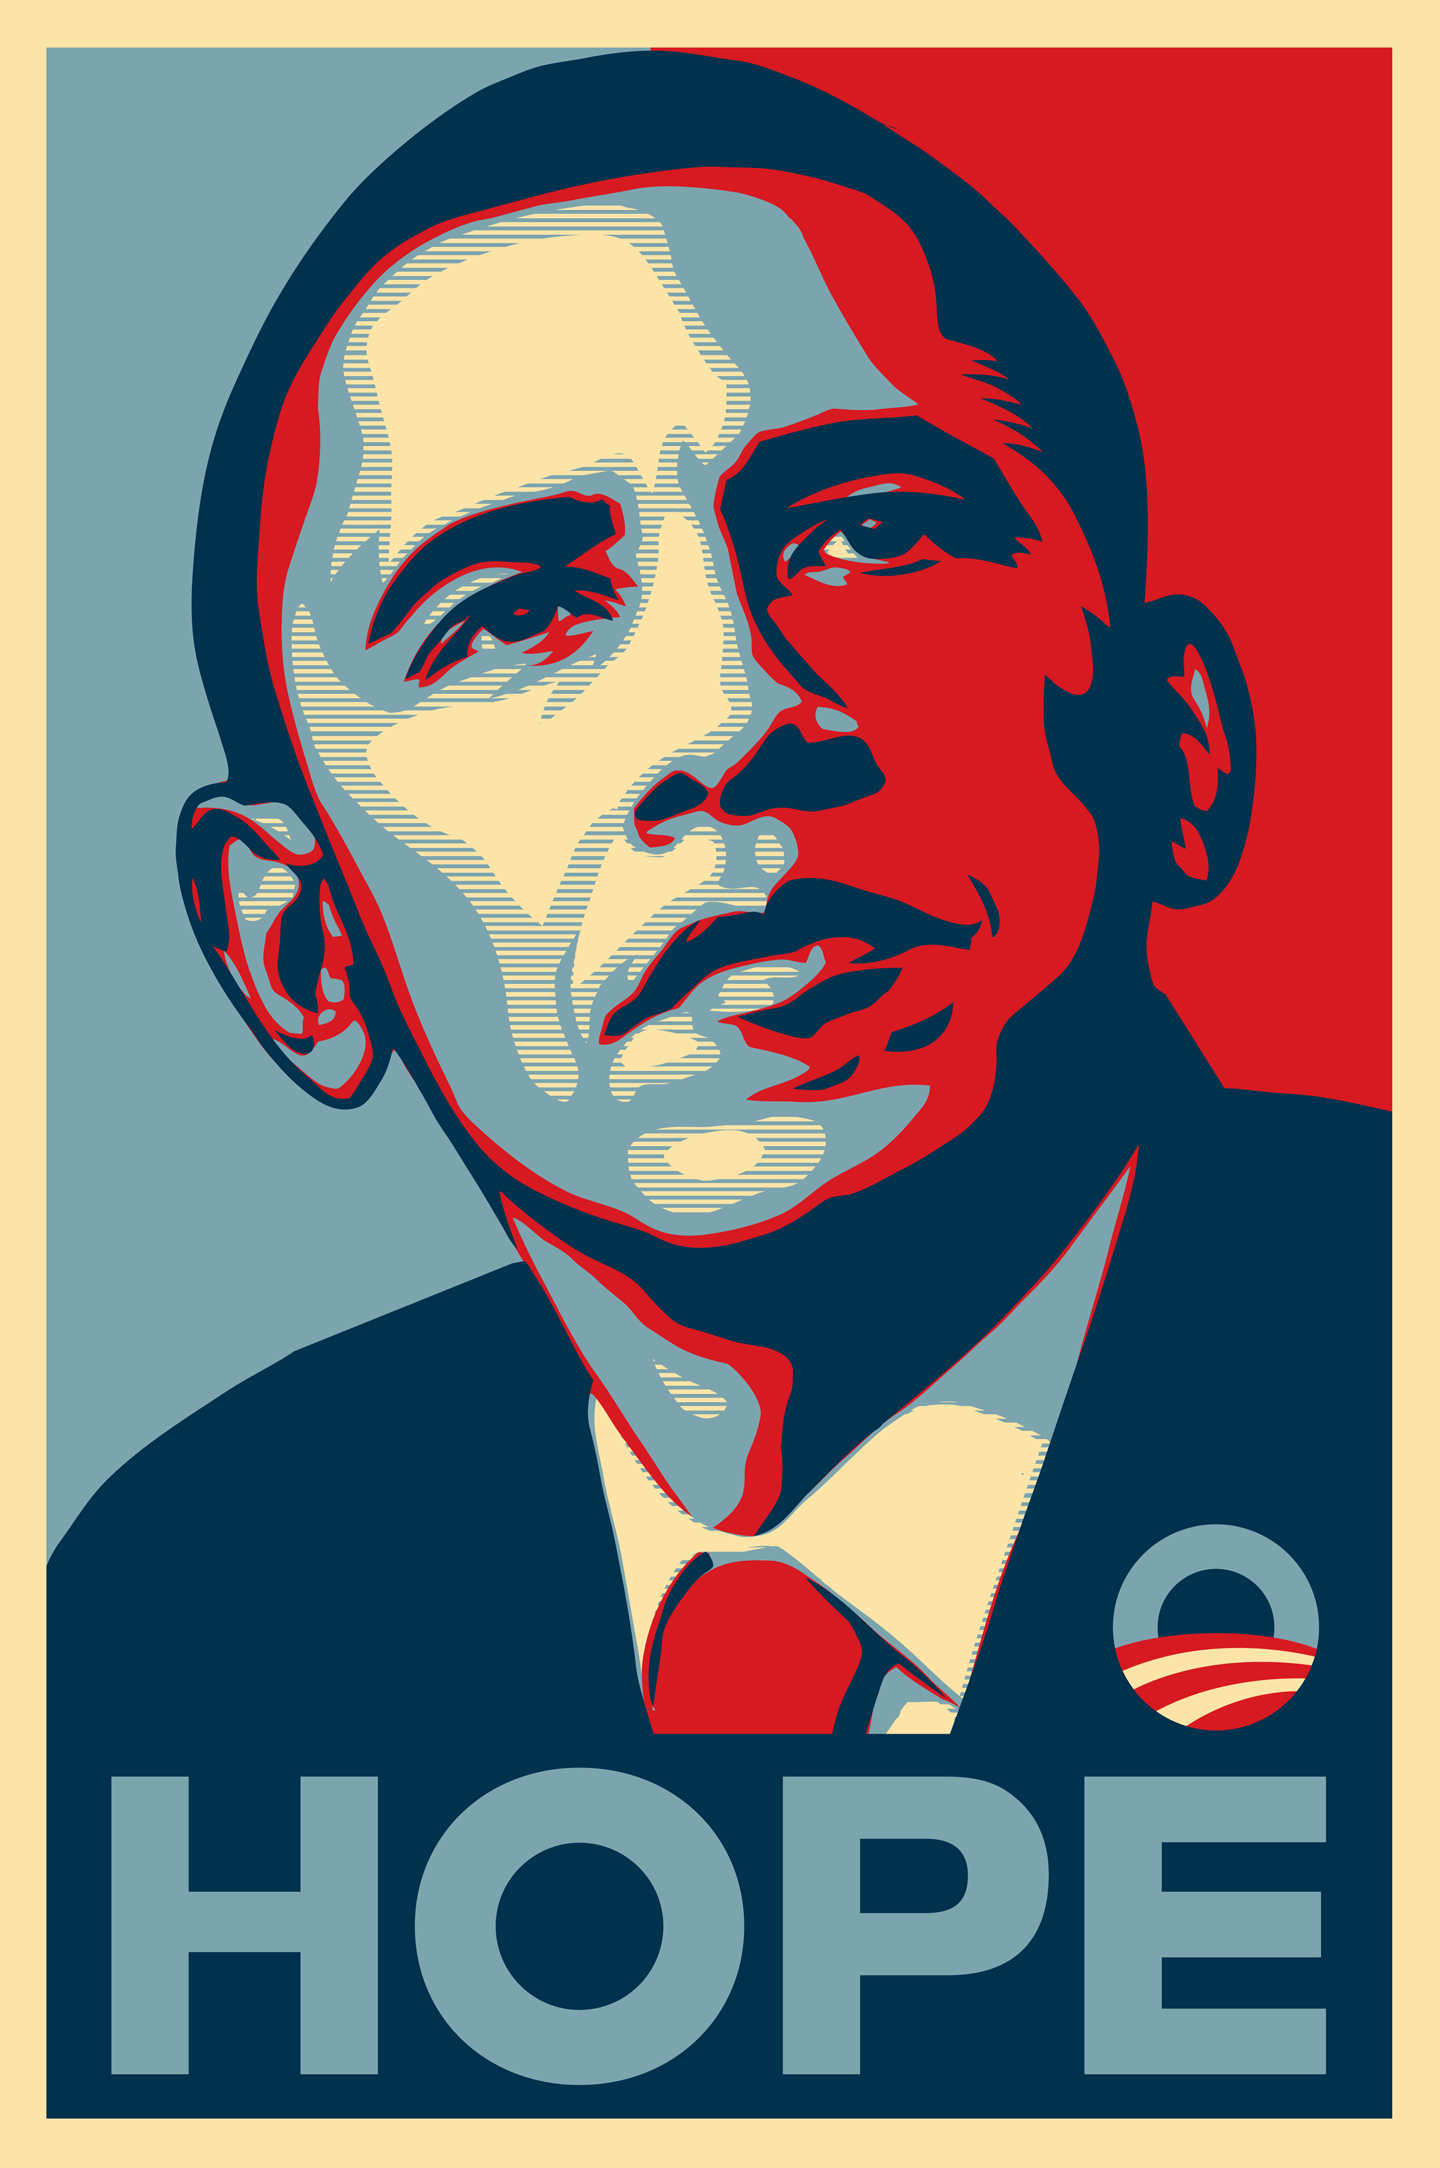 Obama_Hope_Poster1.jpg